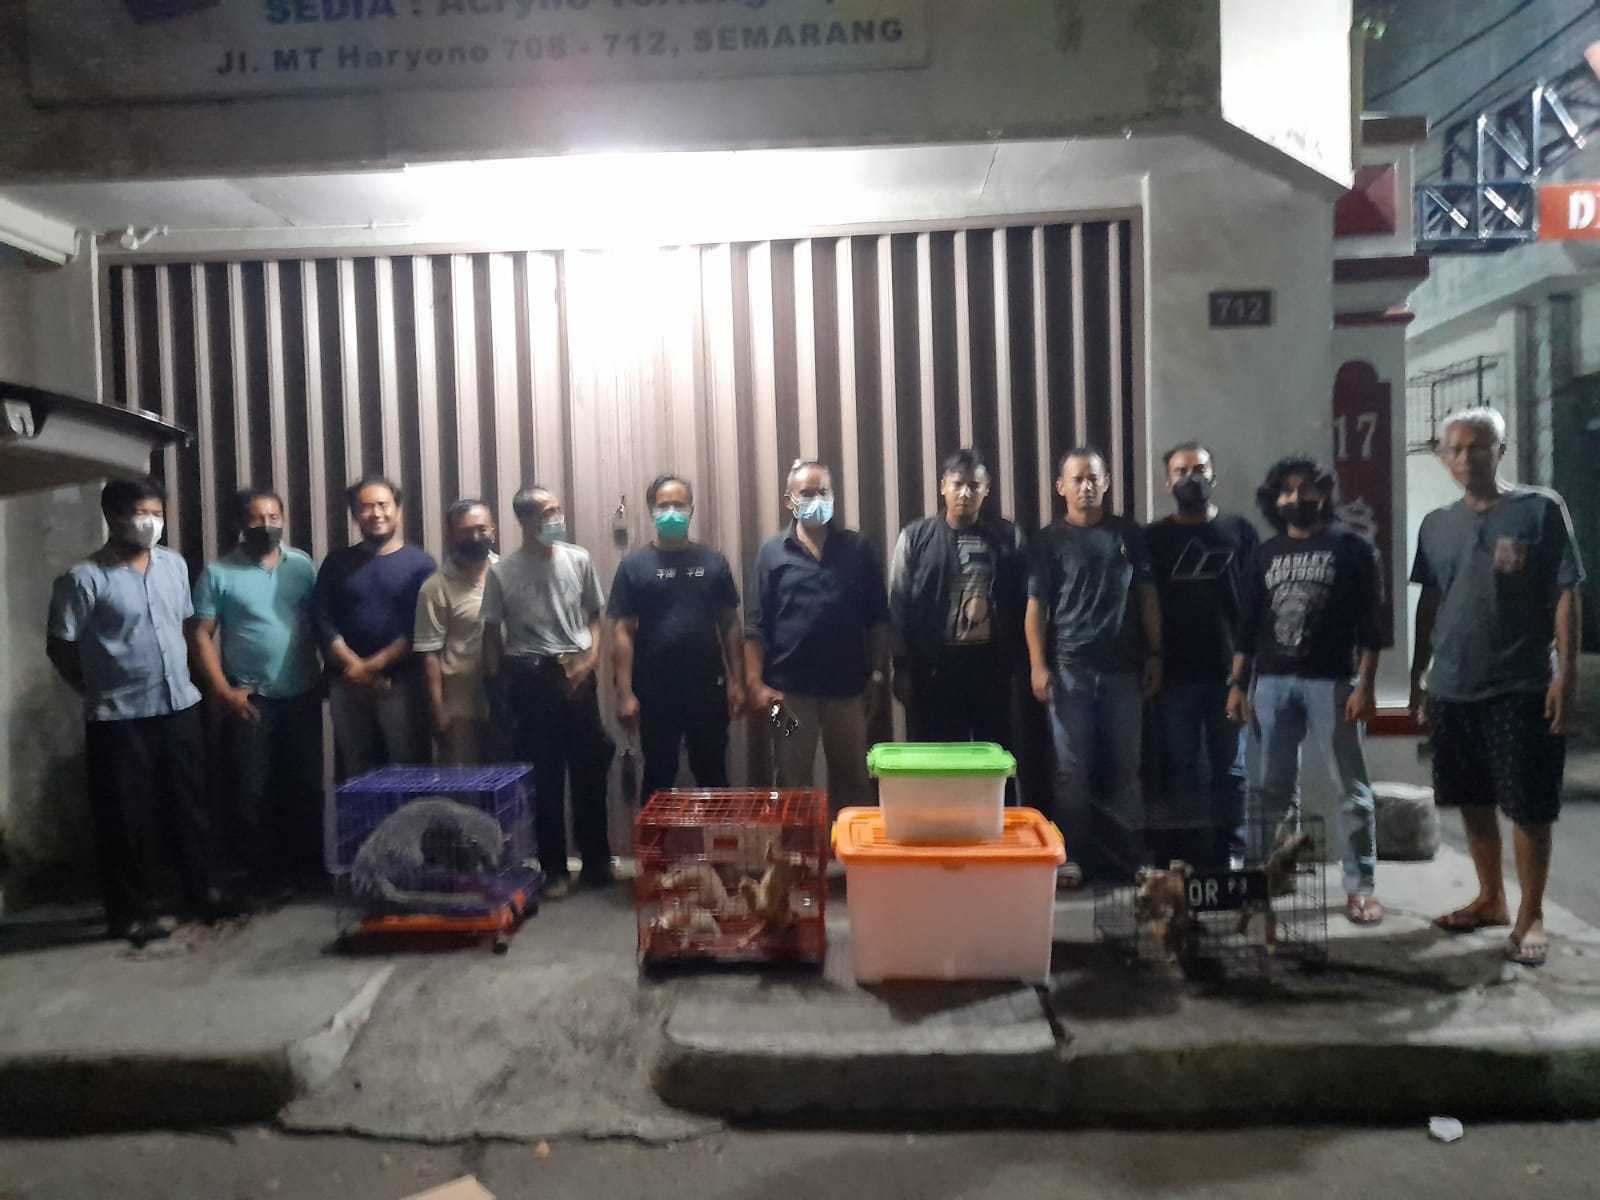 Nekat Jual Kukang, Reptiler Semarang Diciduk Polisi